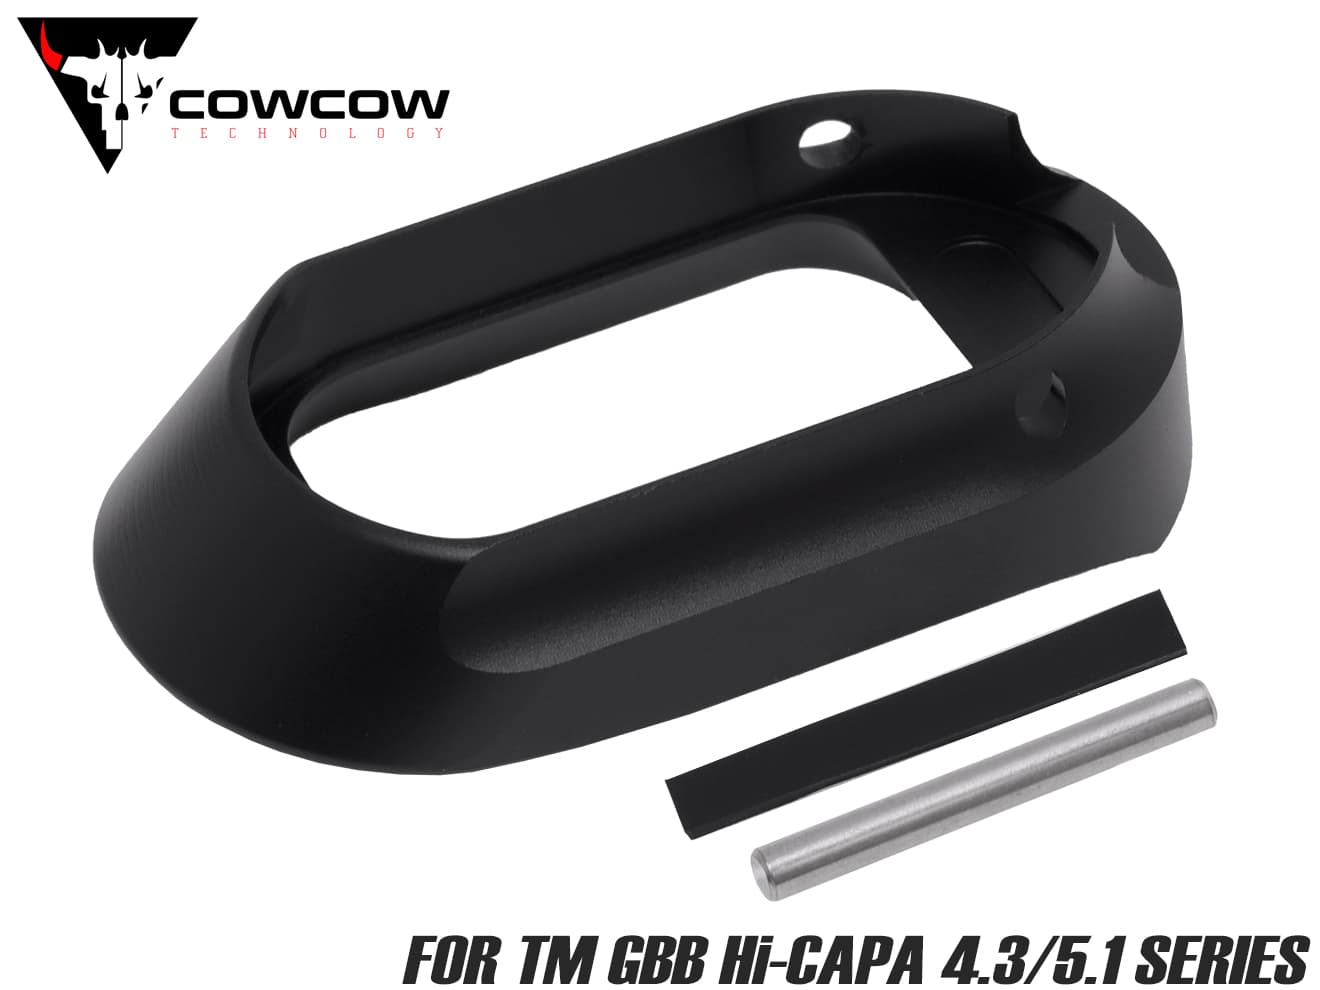 COWCOW TECHNOLOGY アルミCNC ハイヒールマグウェル Hi-CAPA ブラック◆IPSC 対応 形状 リロード 速度 向上 ドレスアップ ヒール部分 切り上げた デザイン